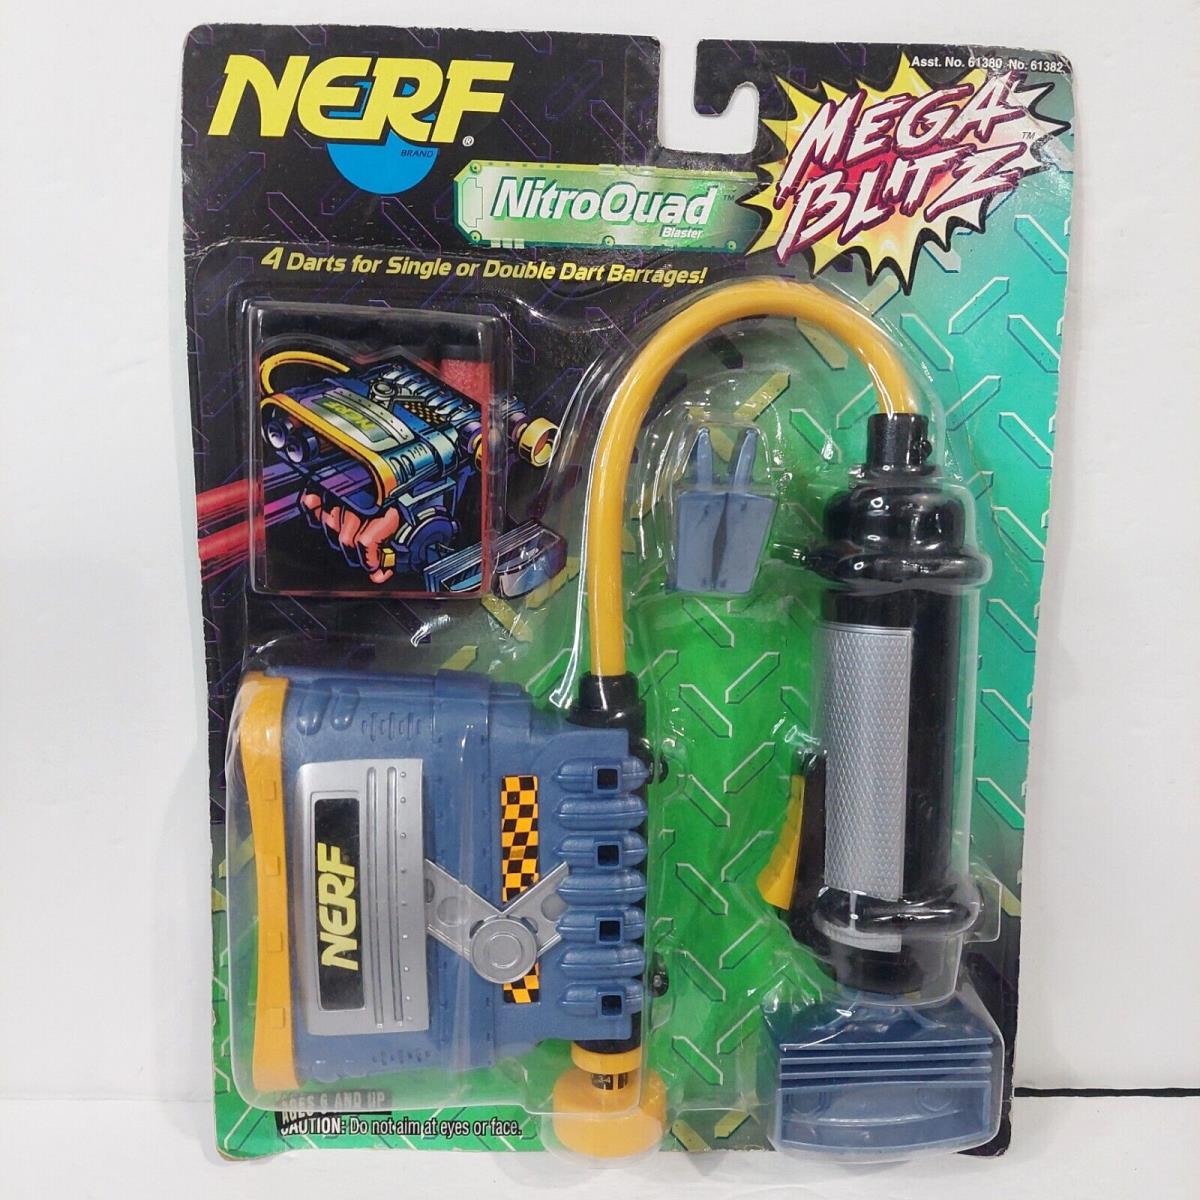 1997 Nerf Moc Nitro Quad Blaster Mega Blitz w/ Darts Kenner Hasbro